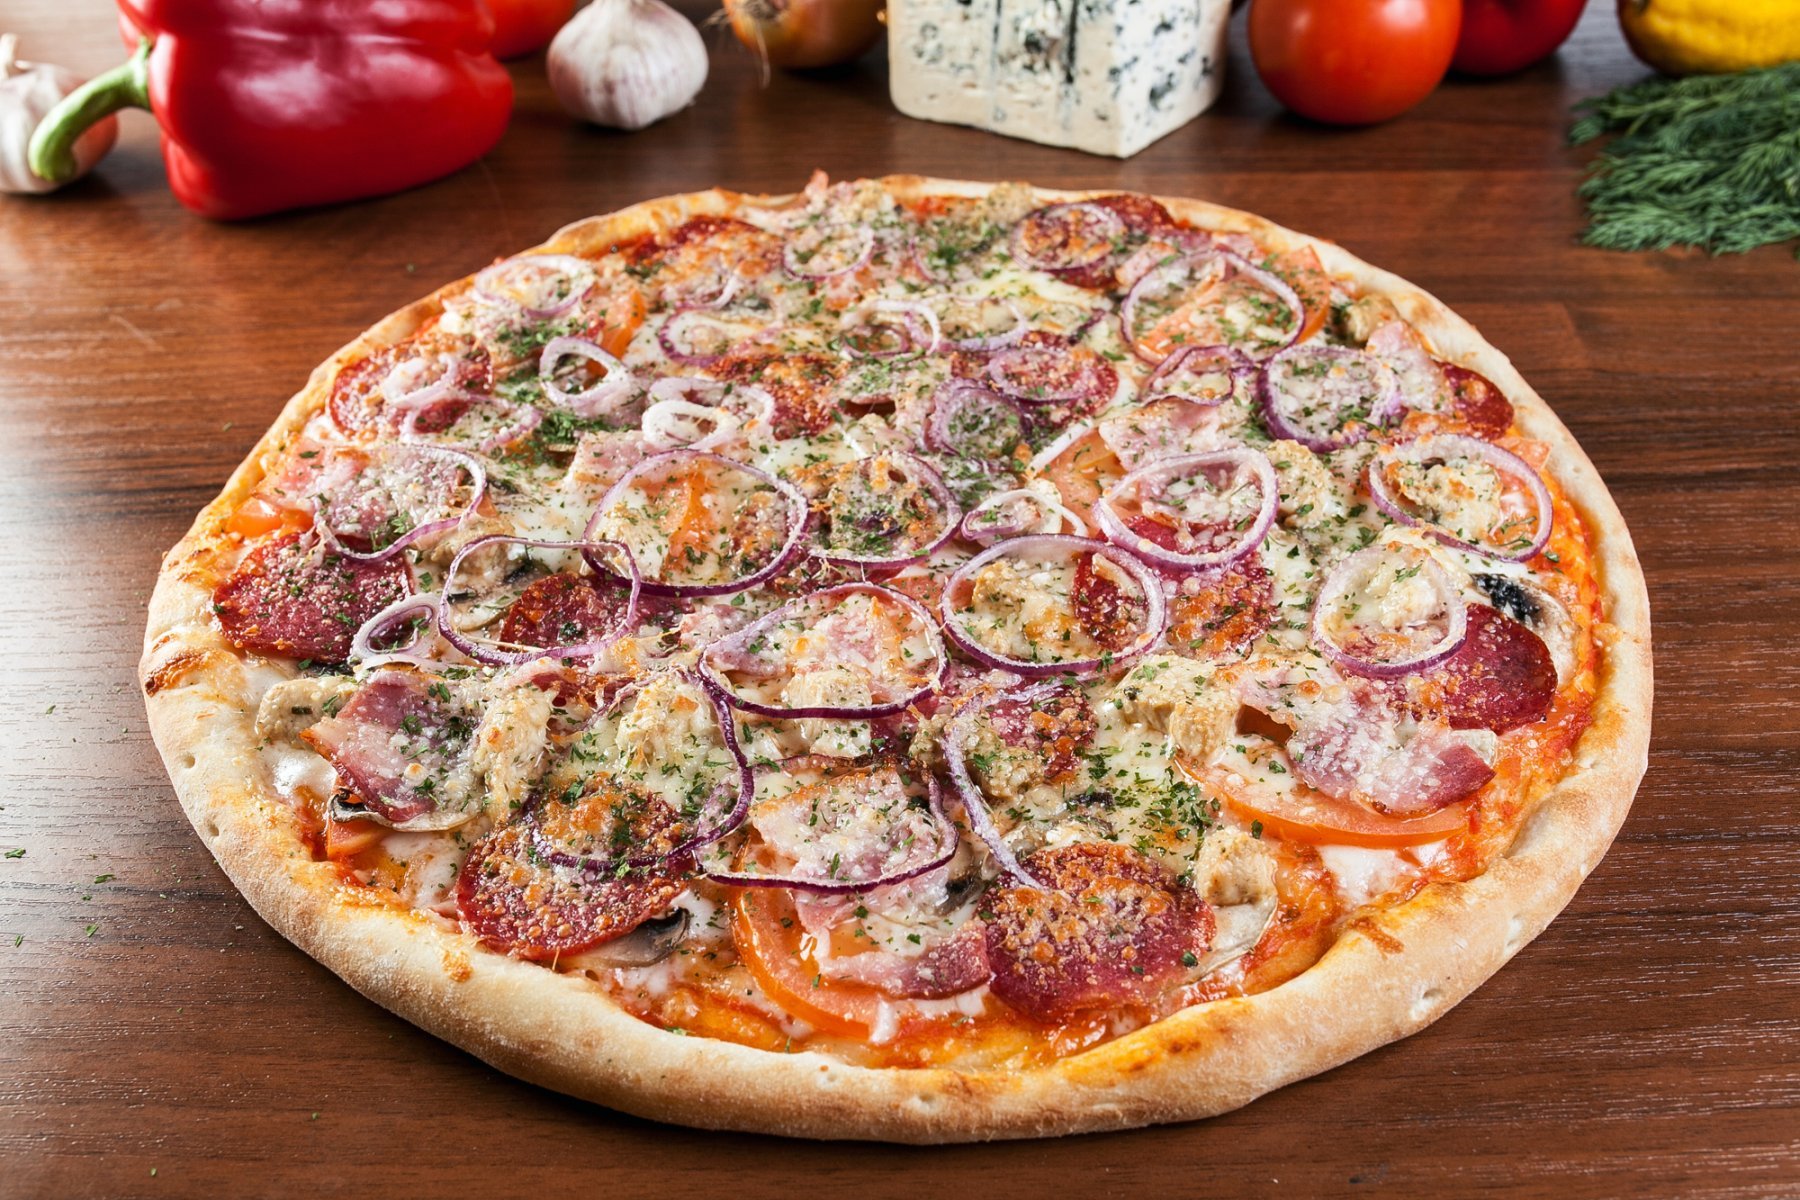 Пицца с солеными огурцами без сыра